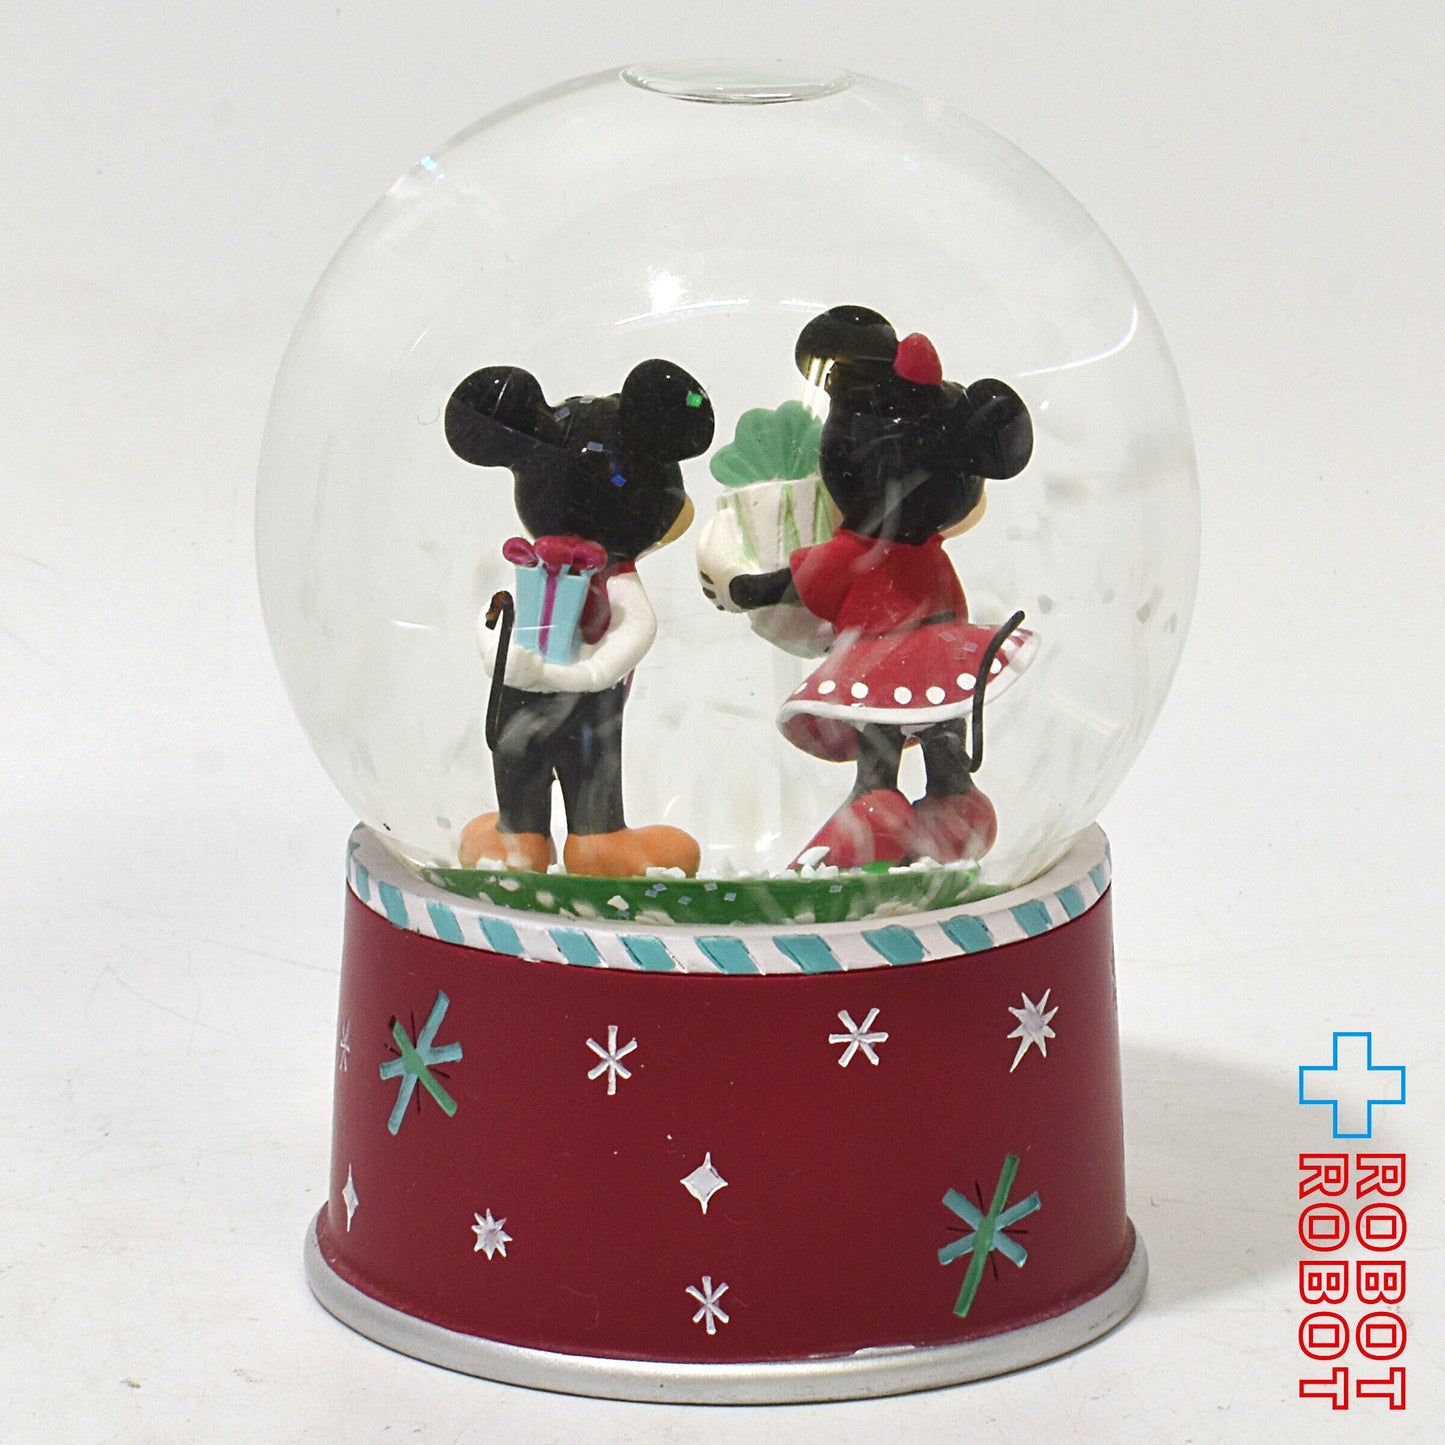 ディズニー ミッキーマウス＆ミニーマウス 2014 クリスマス スノーグローブ